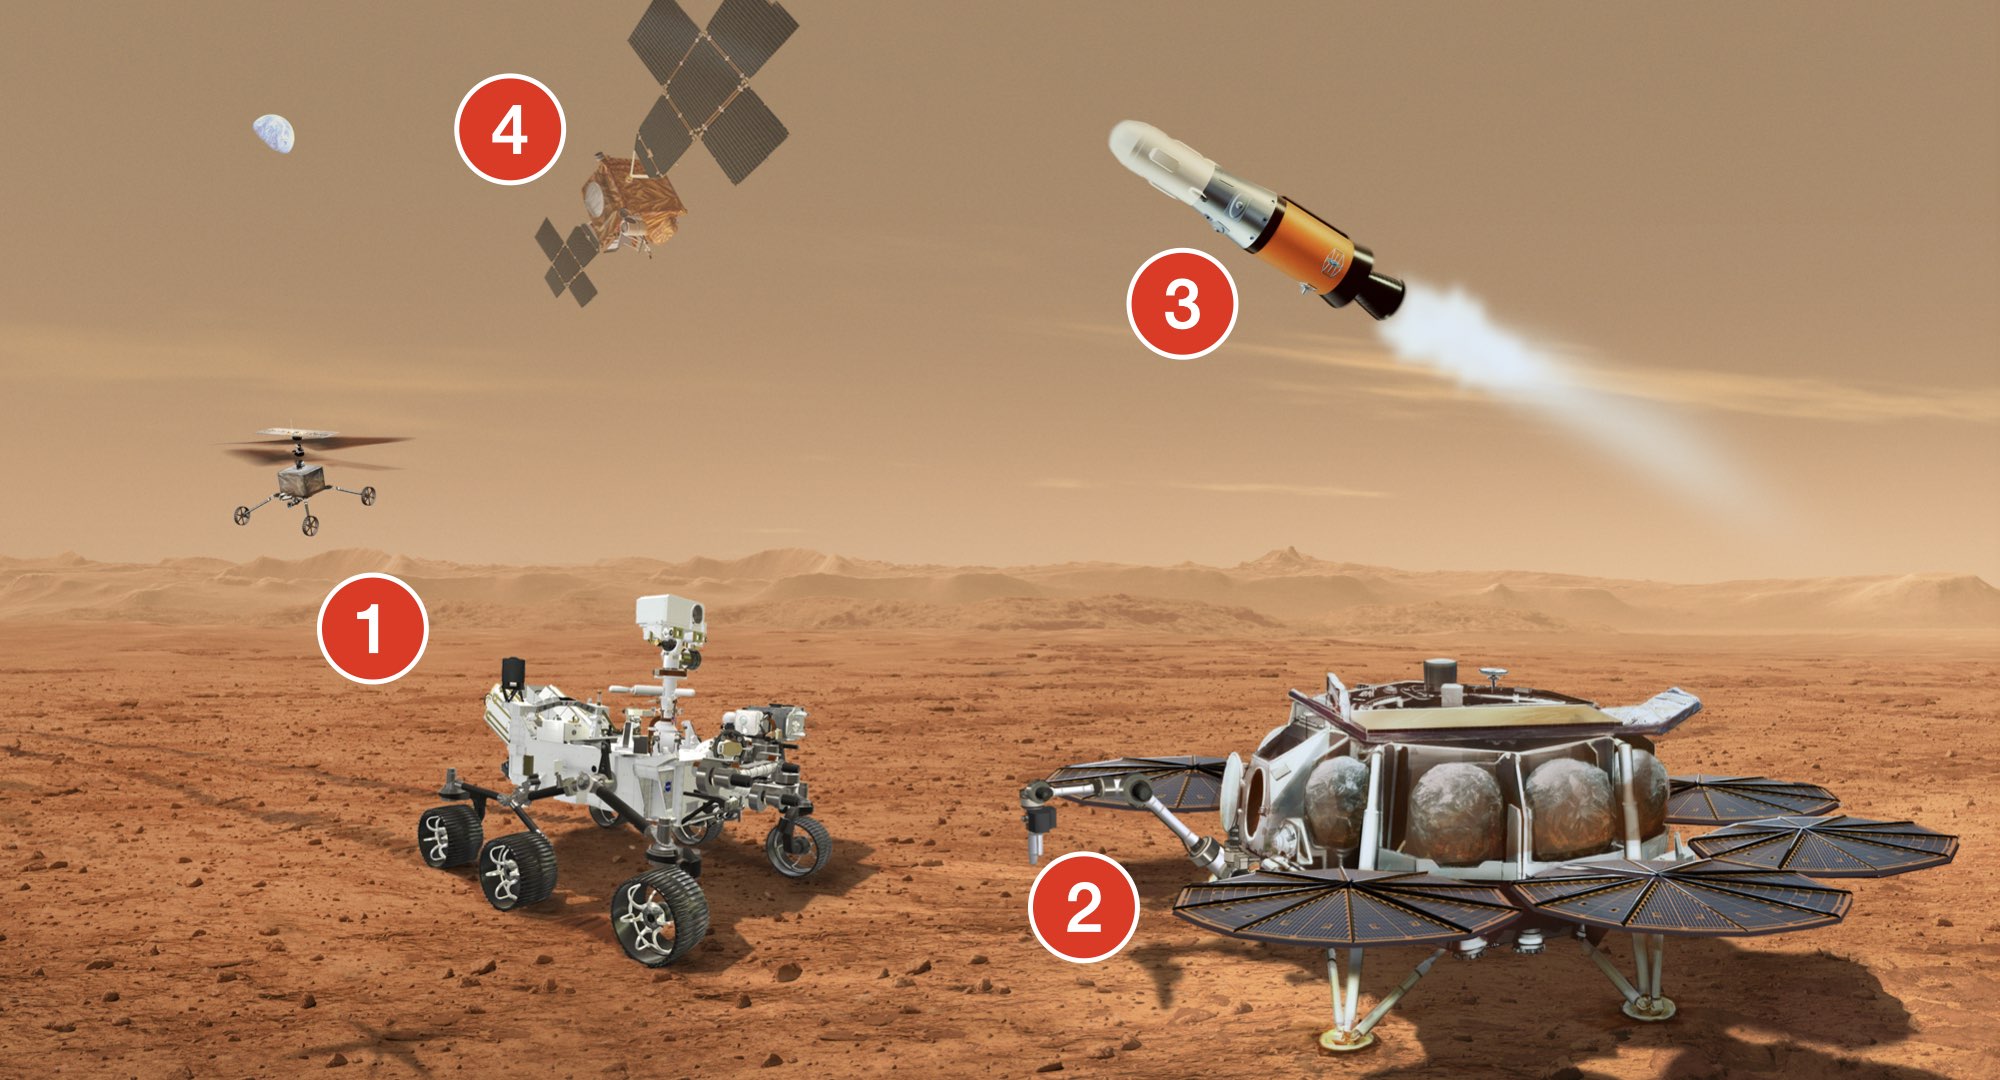 Le nouveau schéma de la mission Mars Sample Return (MSR). 1 : Perseverance (arrivée en février 2021) amène les échantillons qu’il a récoltés, aidé de deux drones hélicoptères. 2 : Les deux drones hélicoptères ont été apportés par un atterrisseur doté d’un bras robotique européen chargé de saisir les tubes d’échantillons. 3 : Depuis cet atterrisseur, une fusée décolle vers l’orbite martienne avec les tubes stockés dans une capsule. 4 : La capsule est capturée autour de Mars par la sonde Earth Return Orbiter (ERO) de l’ESA (fabriquée par Airbus). À proximité de la Terre la capsule est larguée et les échantillons récupérés au sol pour analyses en laboratoire. Crédit : Cité de l’espace d’après NASA